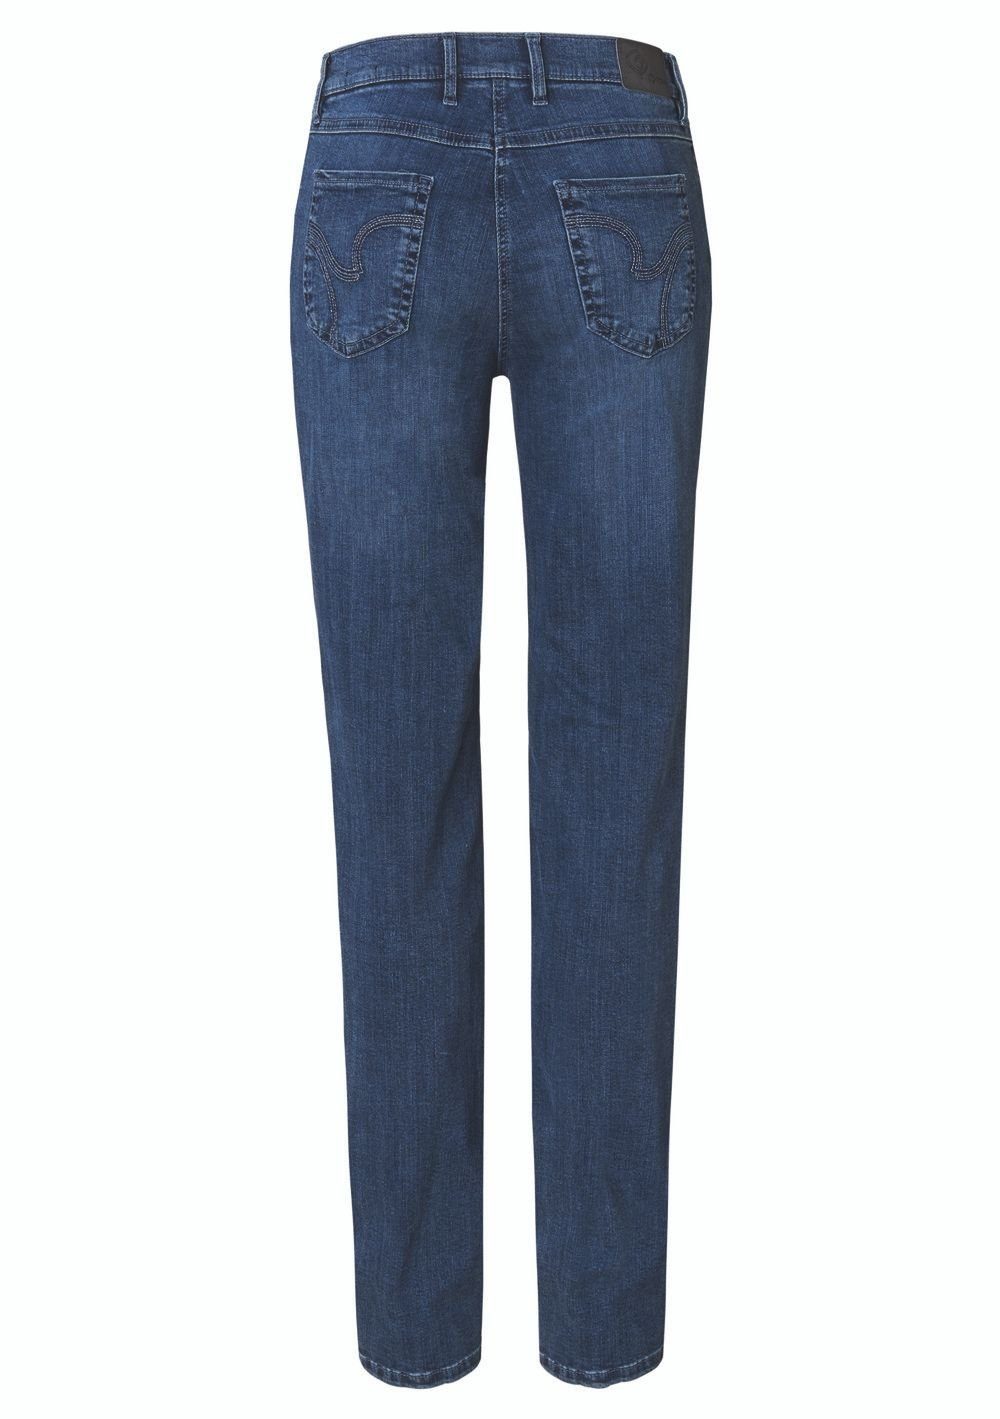 TONI 5-Pocket-Jeans mid blue used